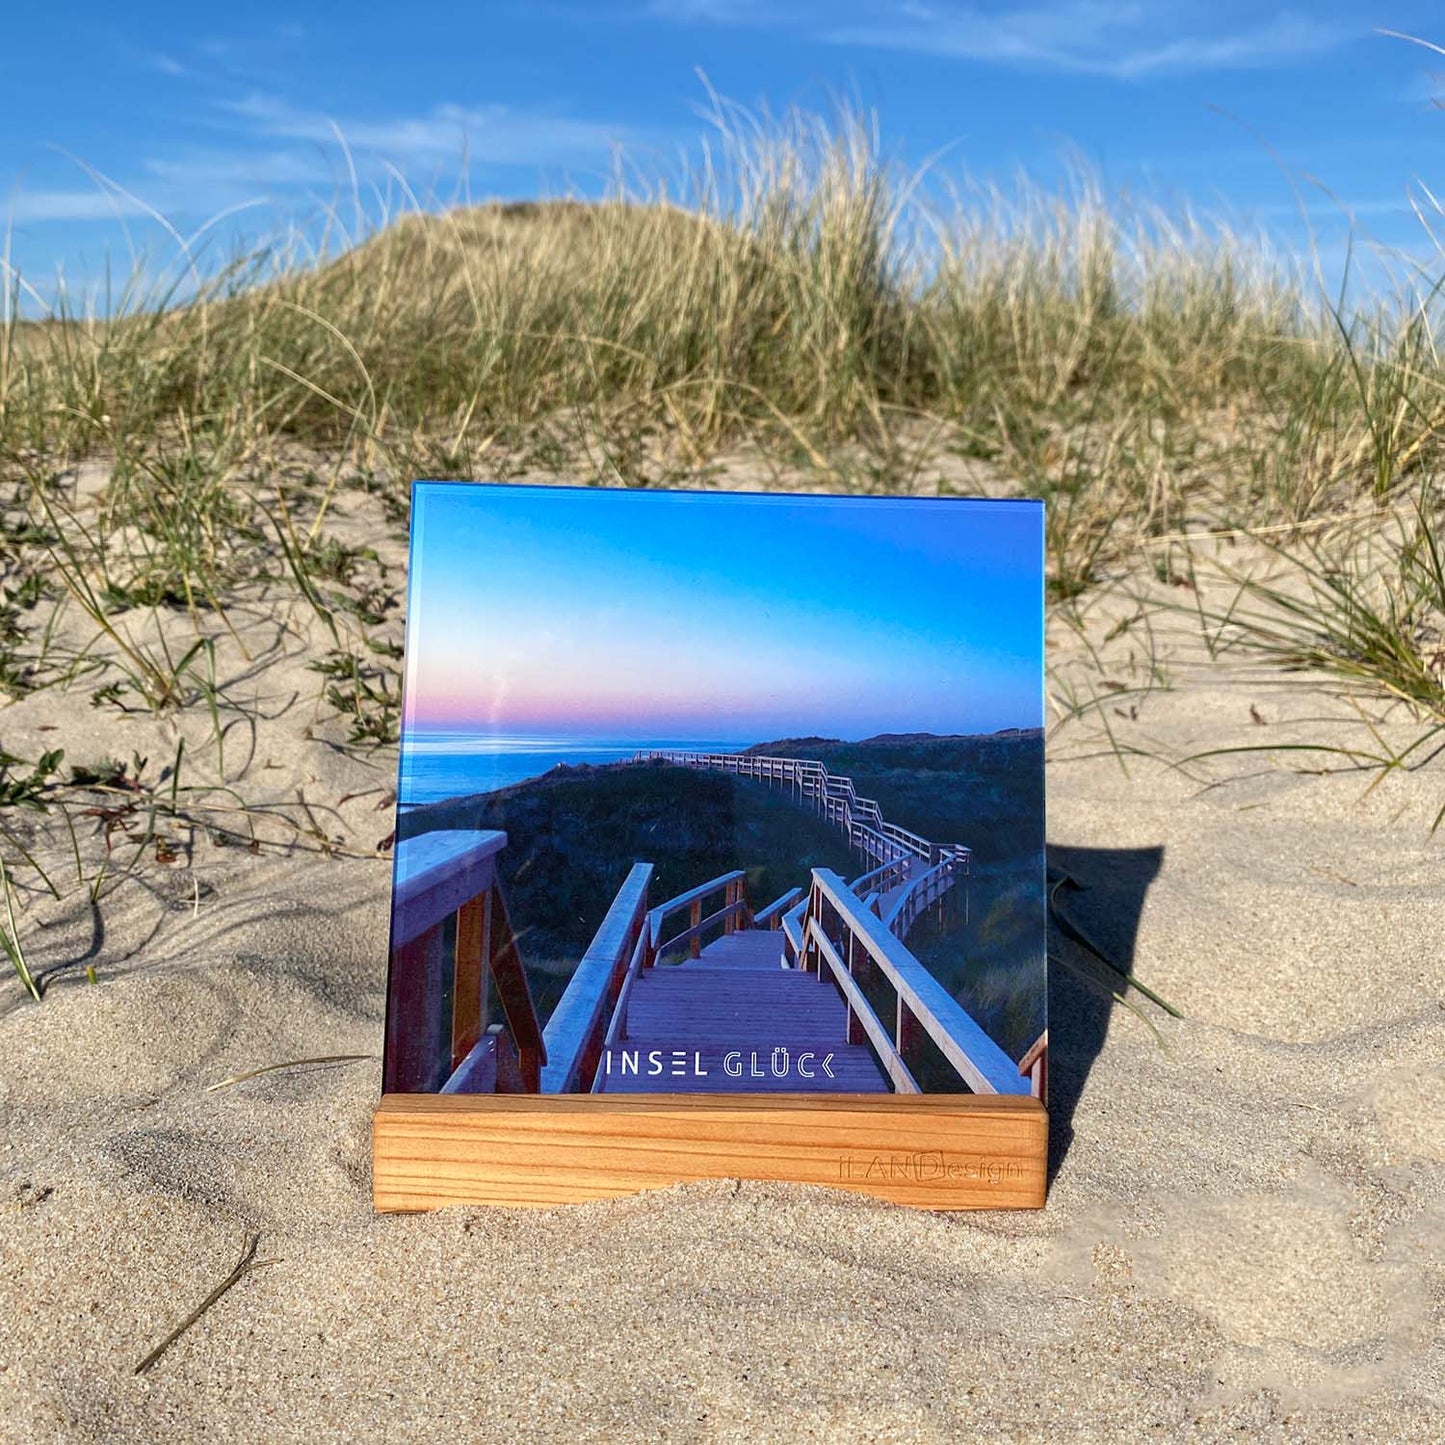 Acrylbild mit Steg durch die Dünen steht in einem Holzbilderhalter in den Sylter Dünen. Unten mittig ist der Begriff Inselglück aufgedruckt.